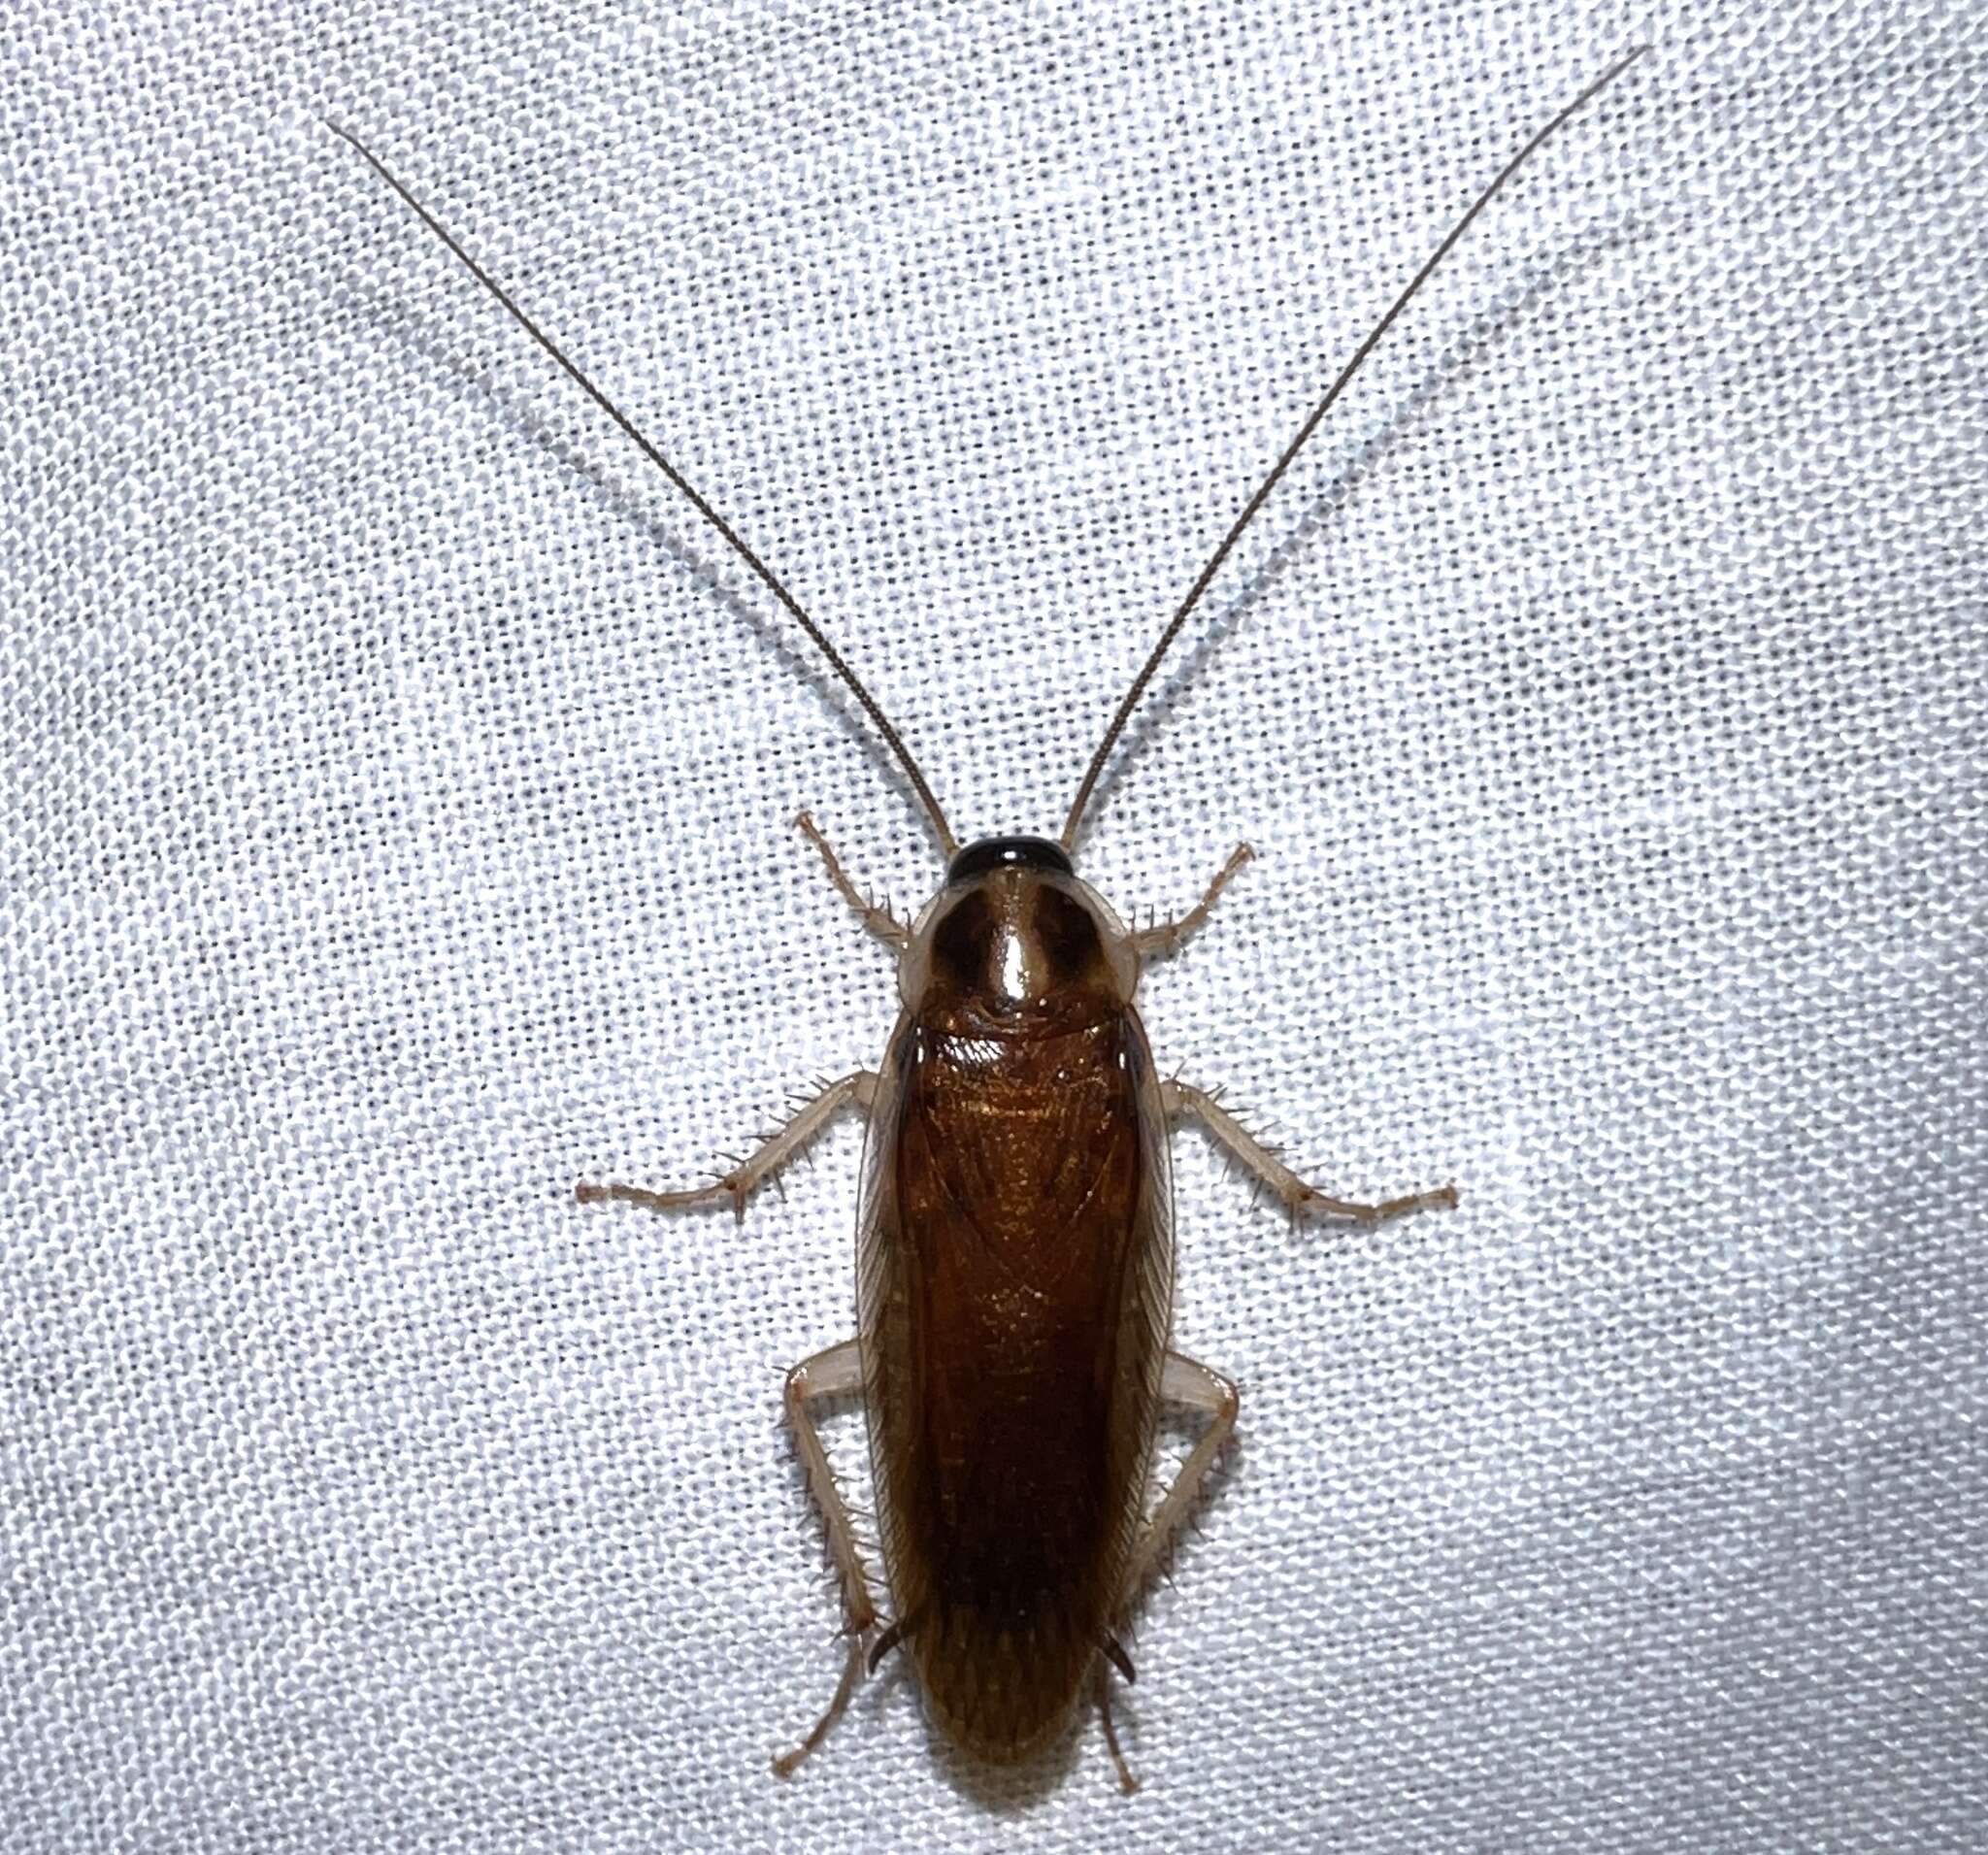 Image of Ischnoptera bilunata Saussure 1869